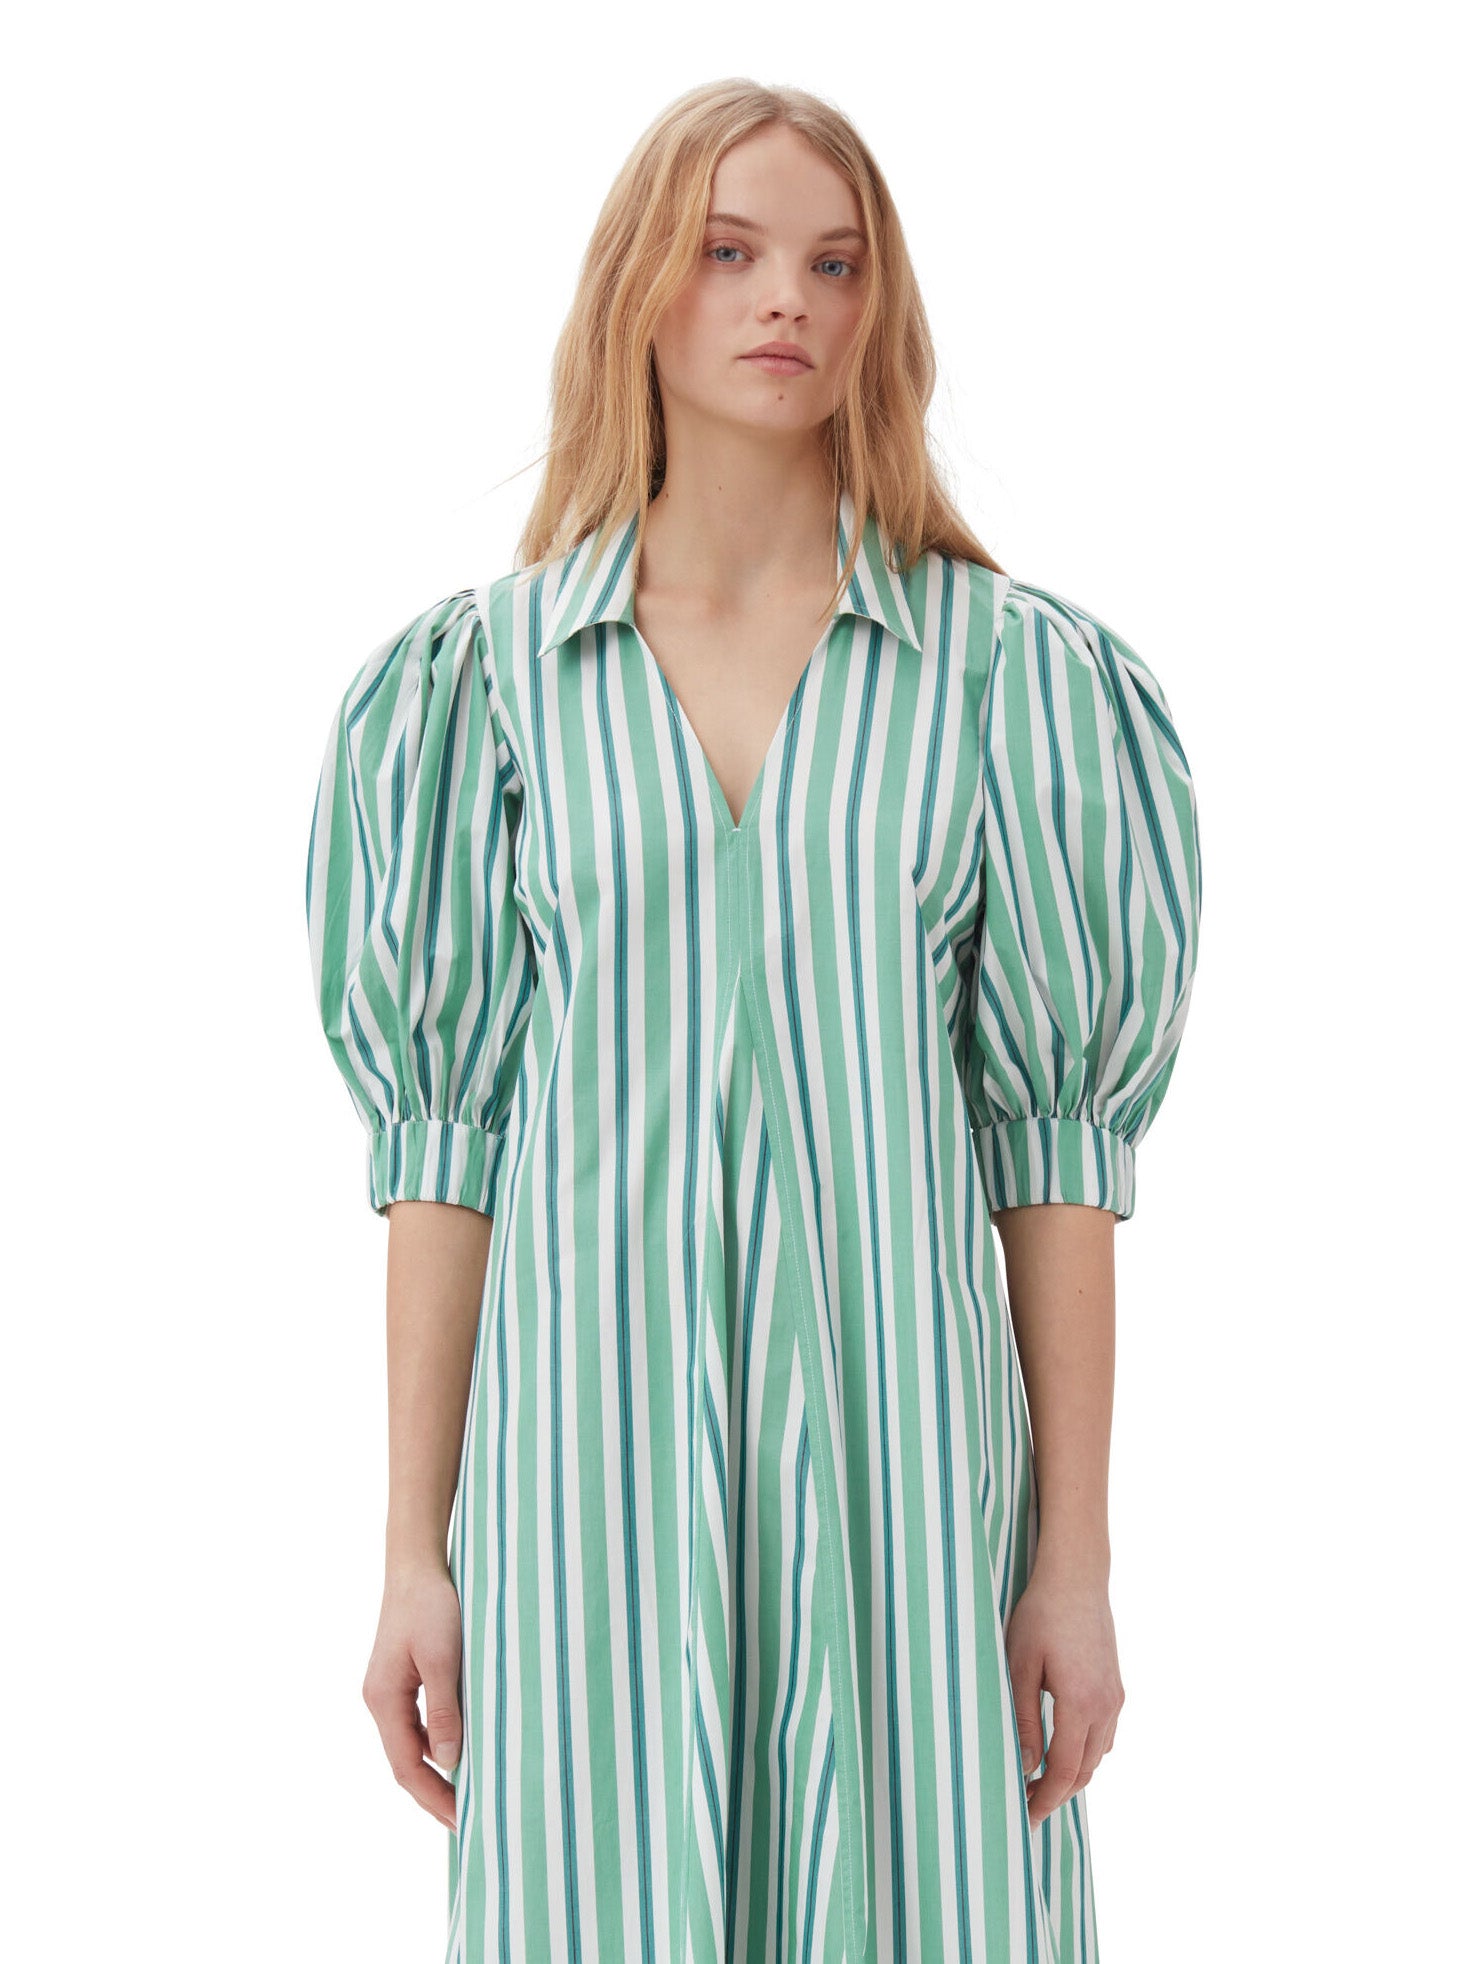 Stripe Cotton Collar Long Dress